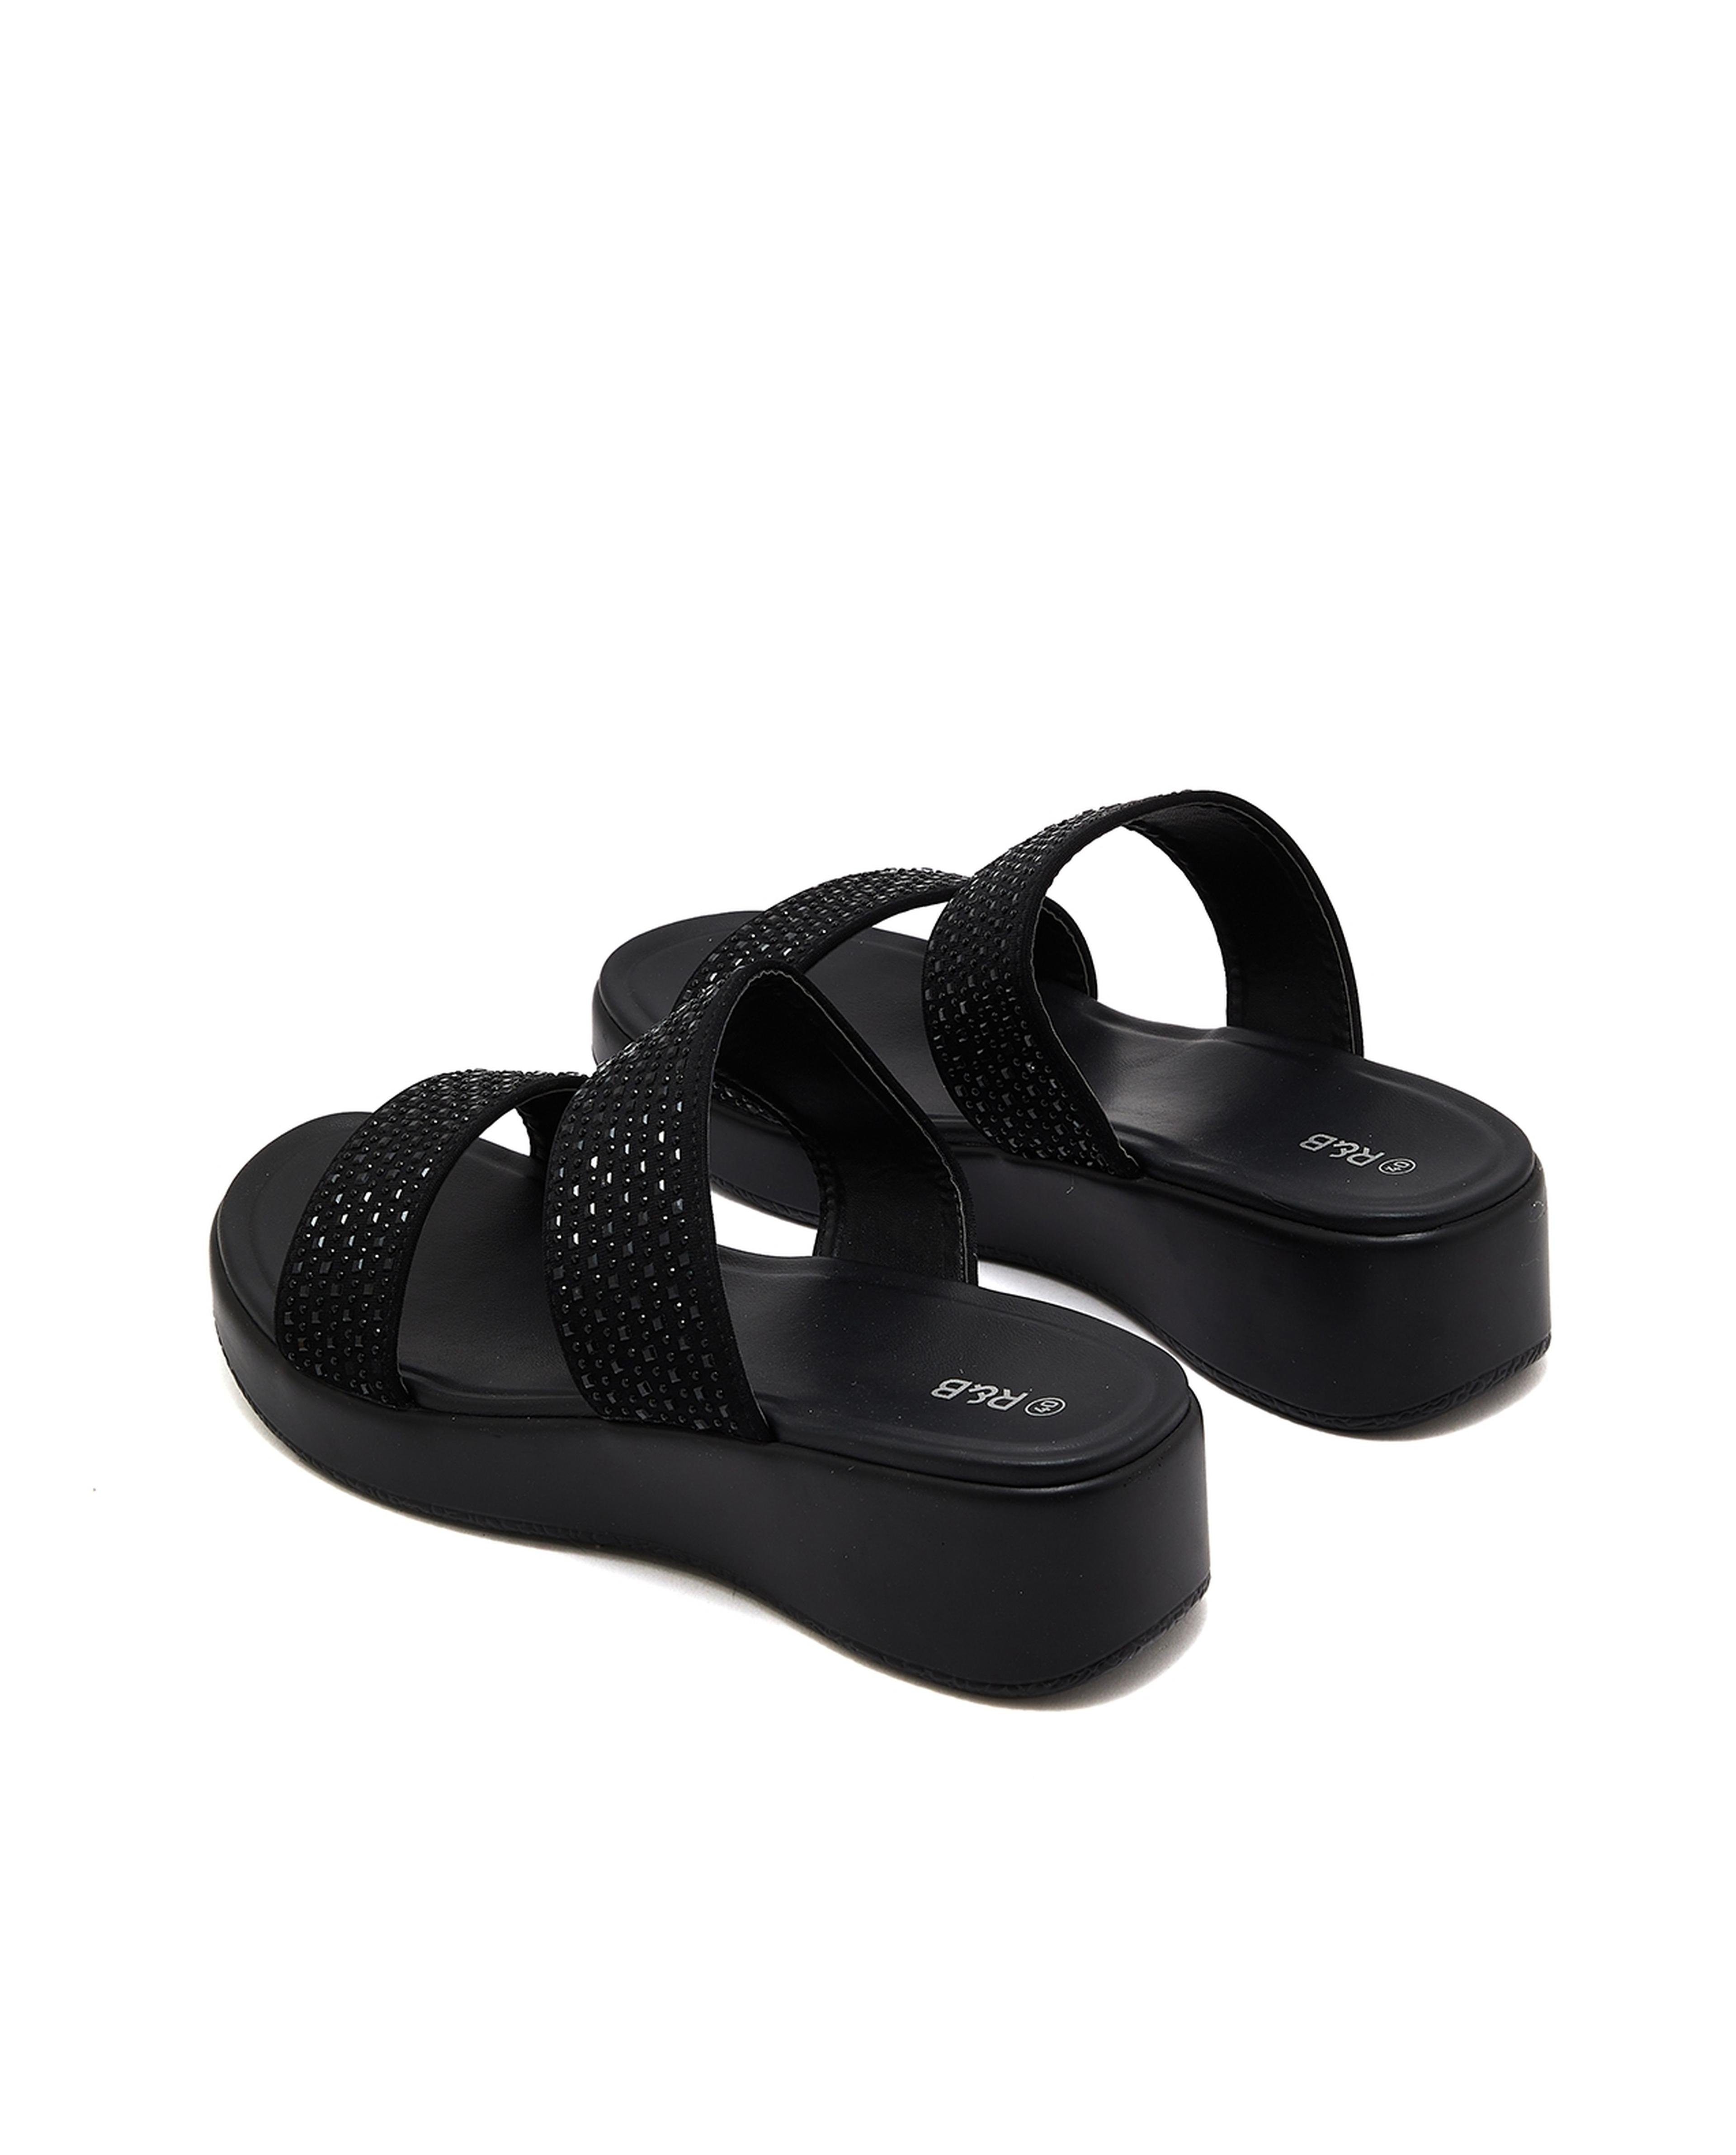 Embellished Platform Comfort Sandals